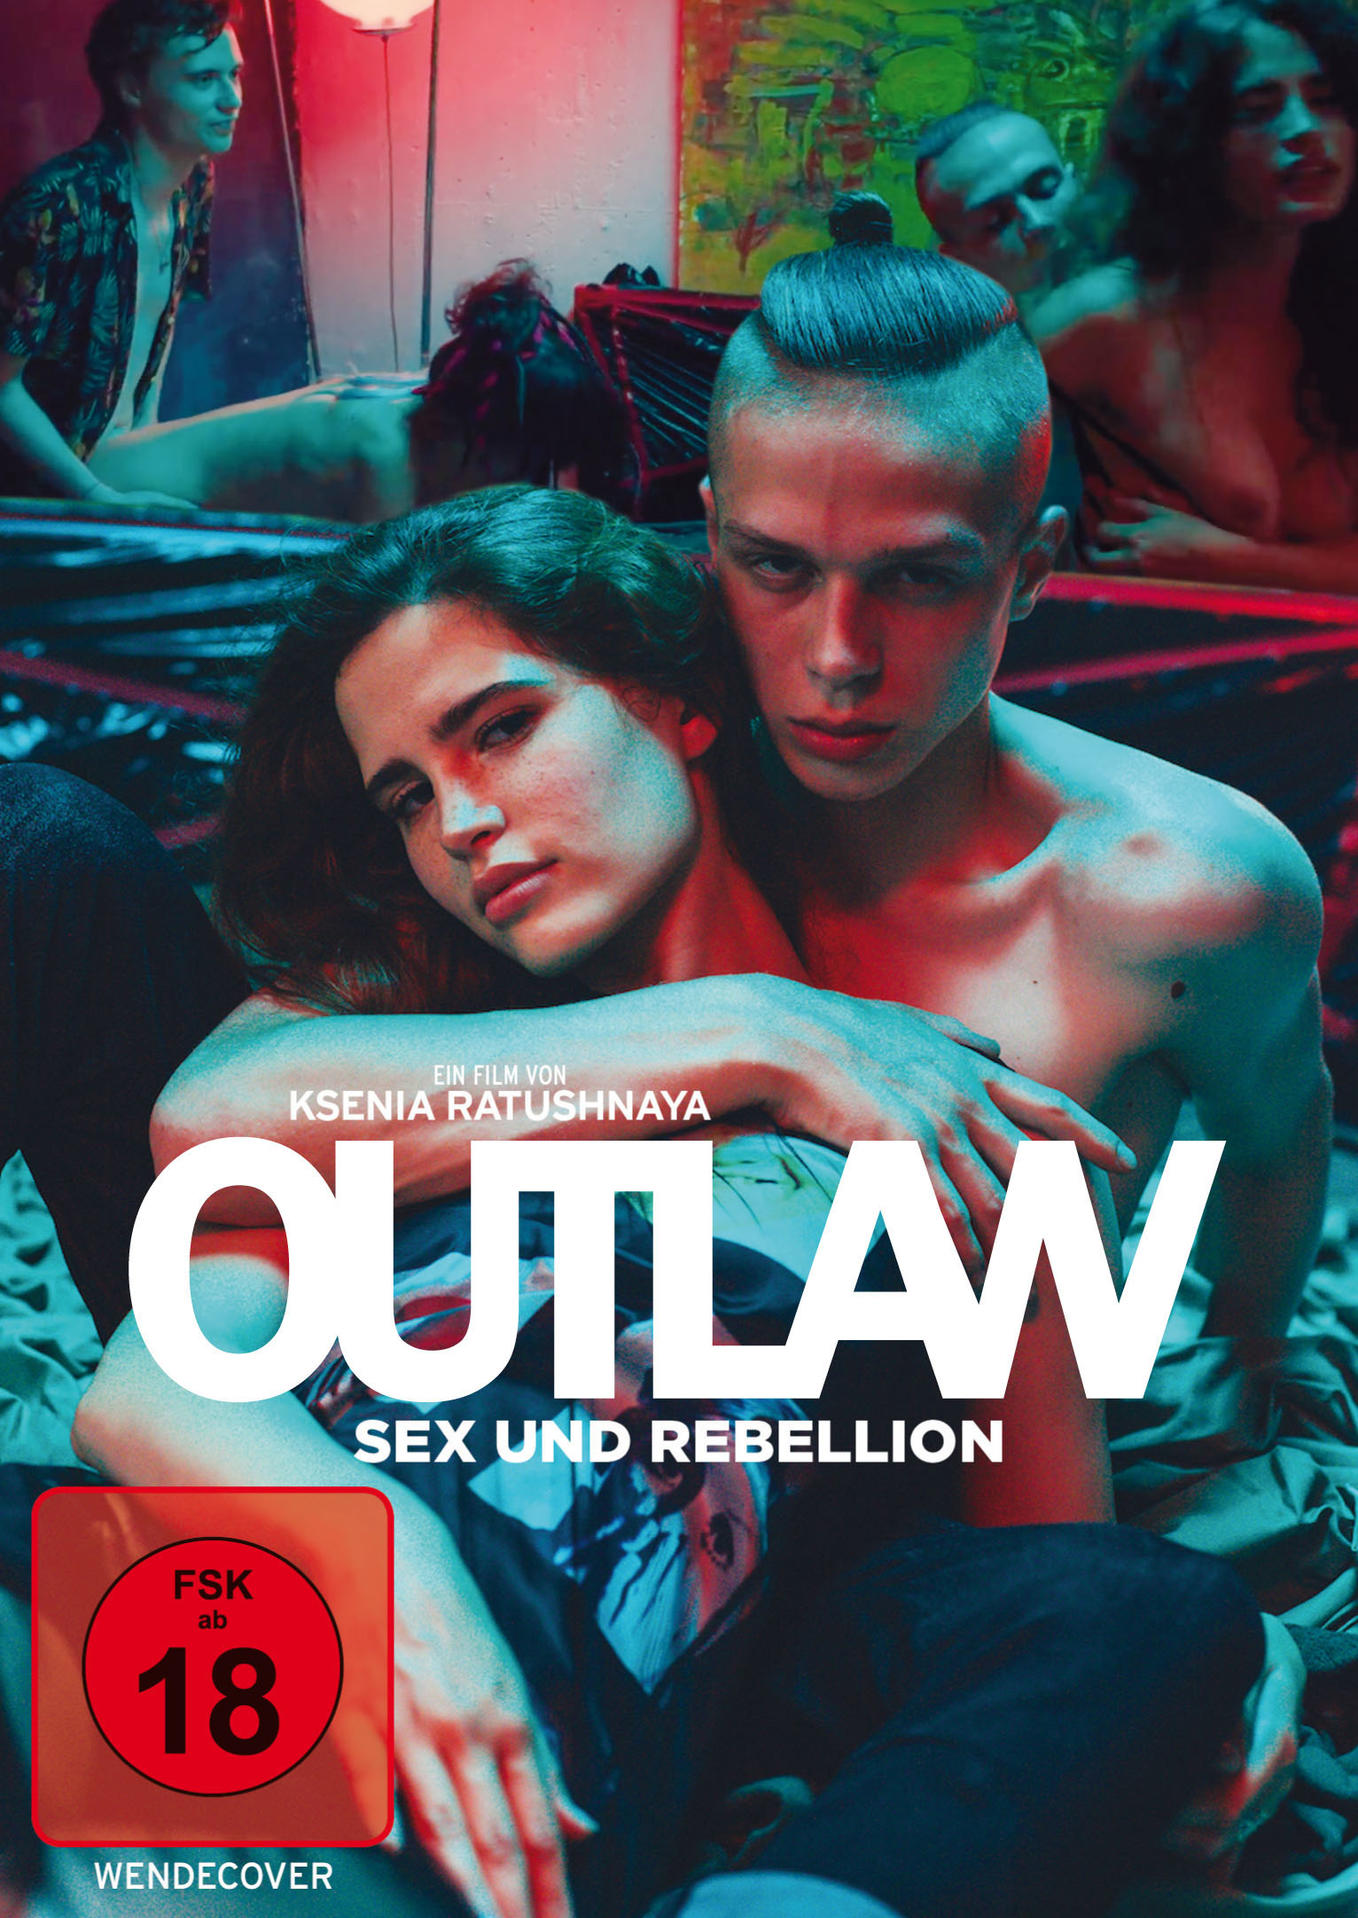 Outlaw - Sex und DVD Rebellion